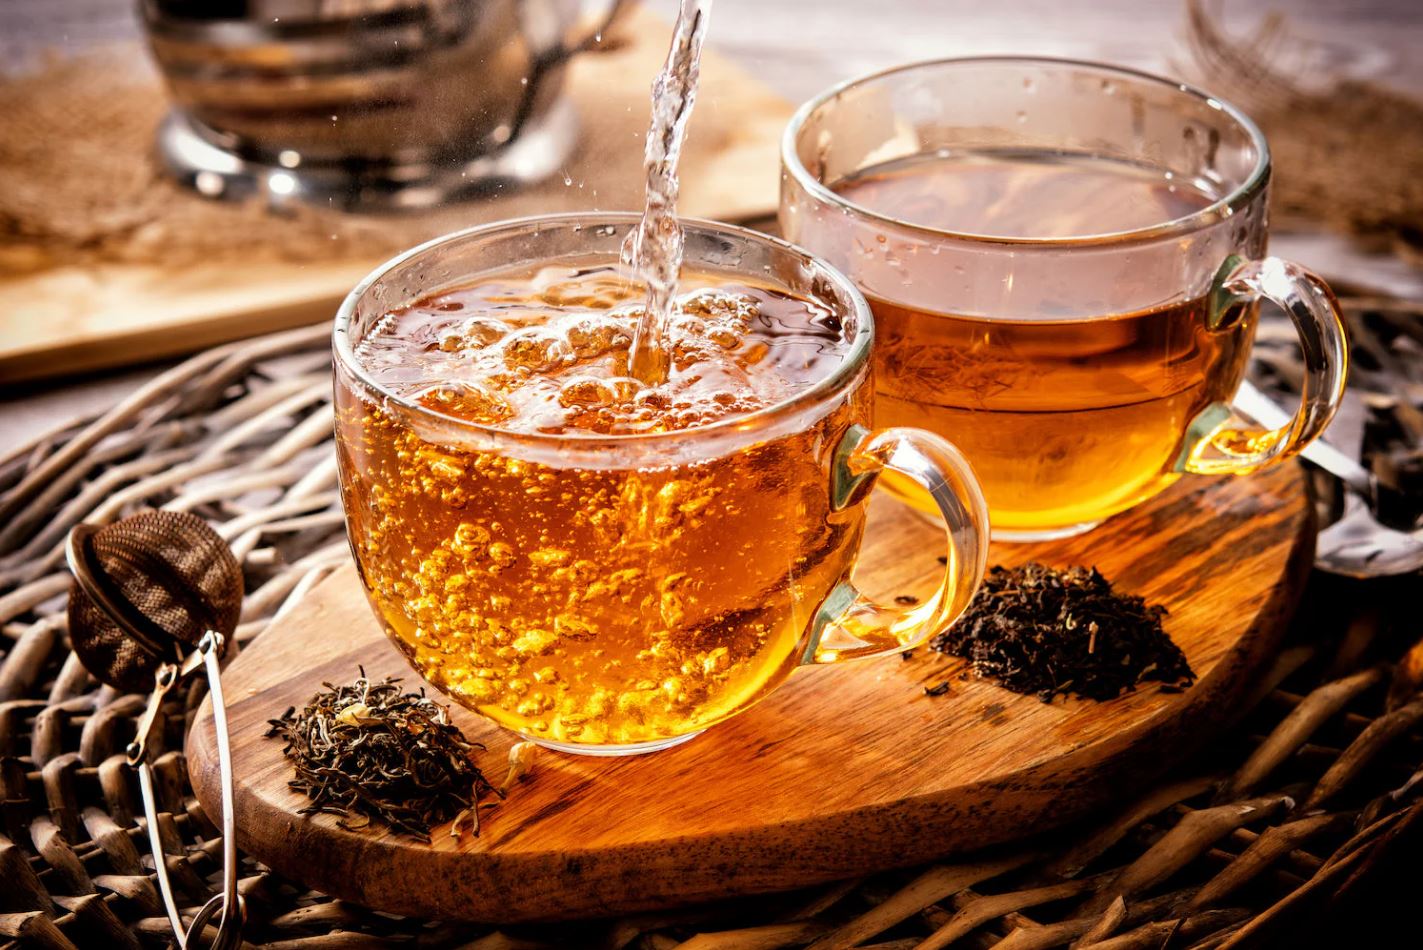 Ngoài nước lọc, người Nhật hay dùng 5 loại trà để giải nhiệt và ngừa ung thư, chợ Việt bán đầy nhưng ít ai biết- Ảnh 6.